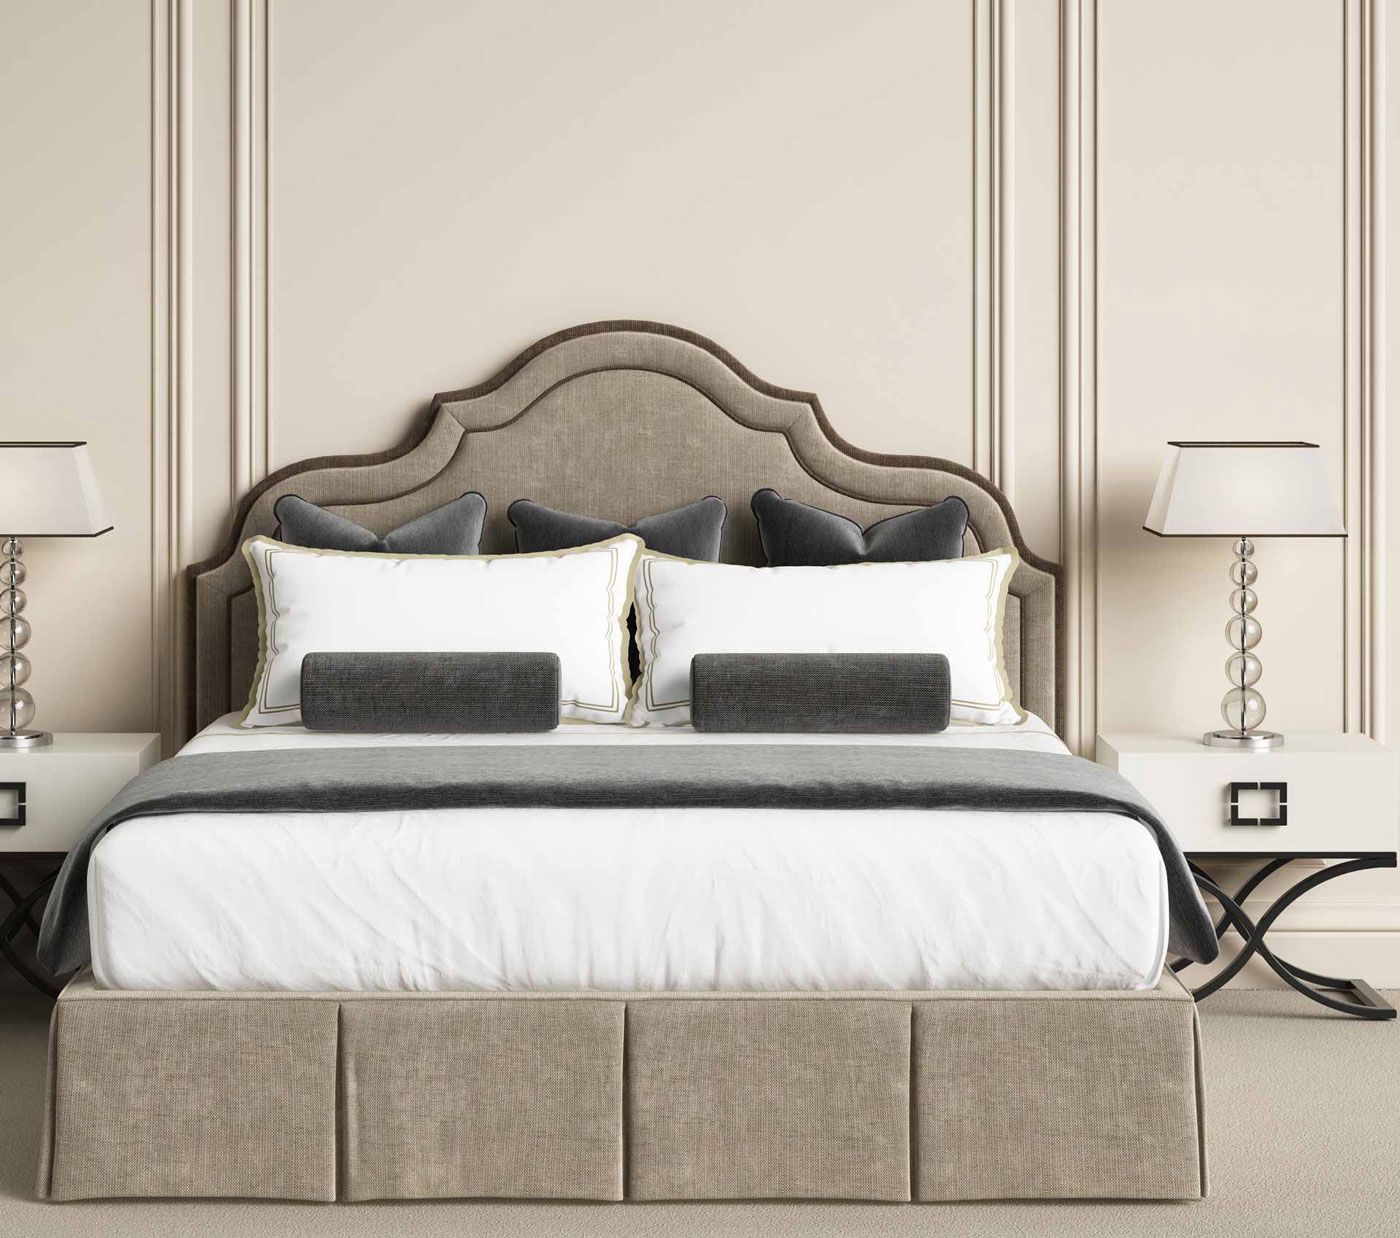 Tête de lit et décor de lit sur mesure dans les tons beige et marron